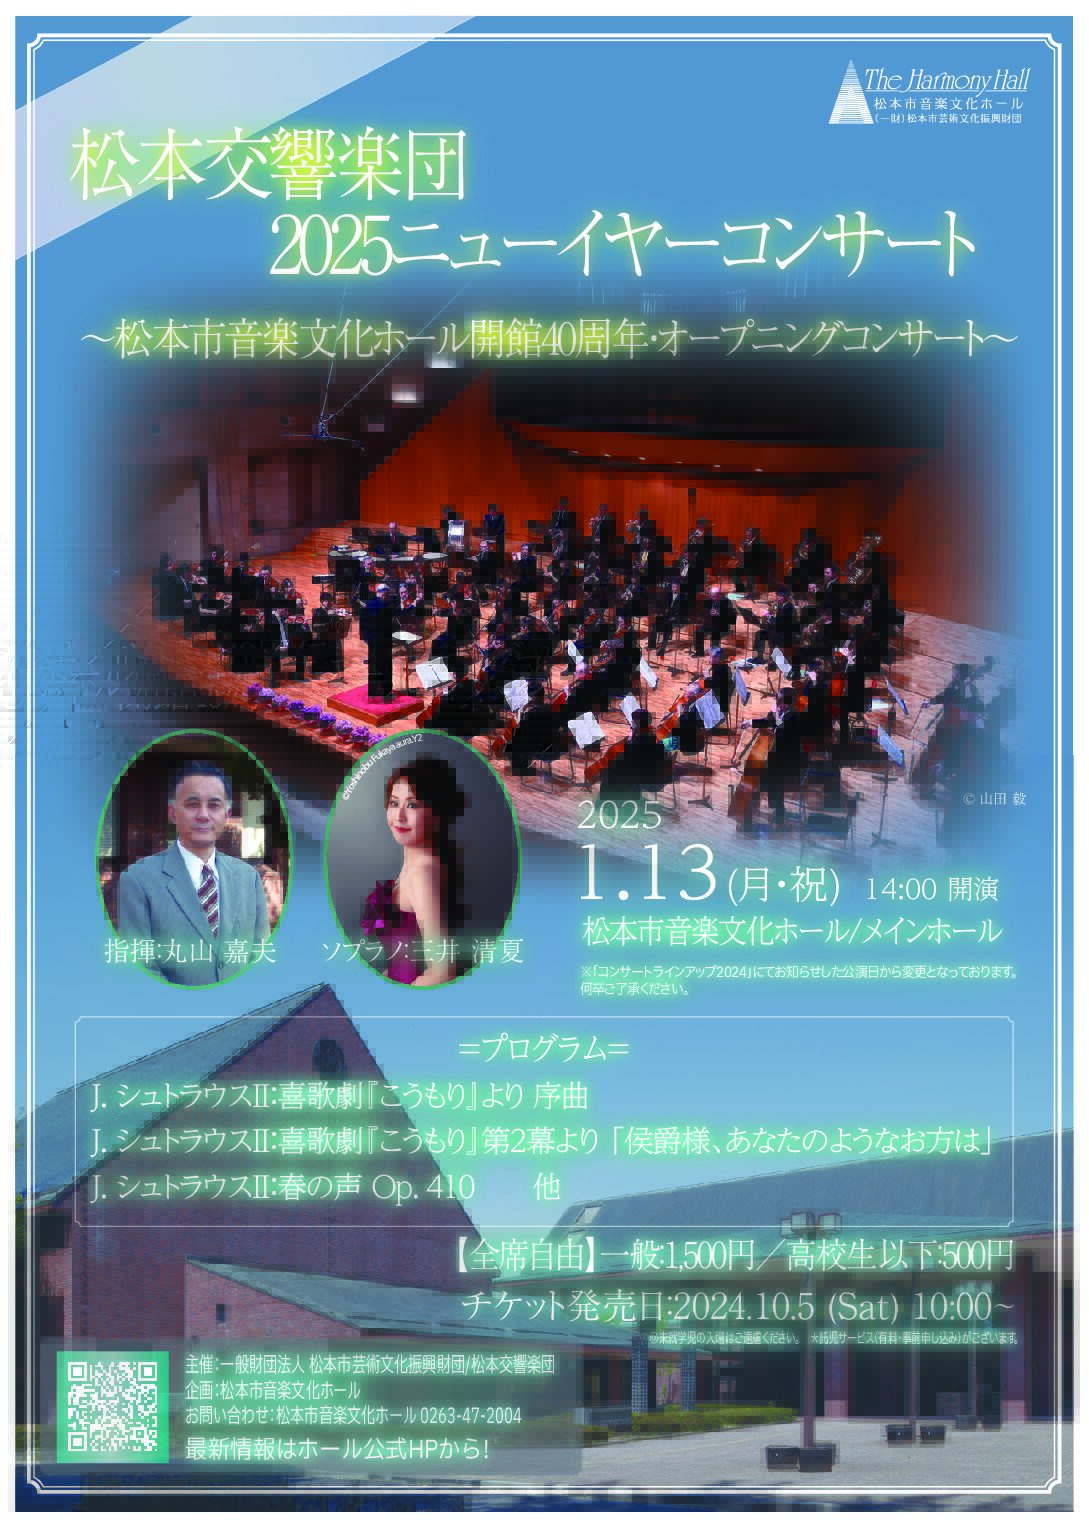 松本交響楽団 2025 ニューイヤーコンサート